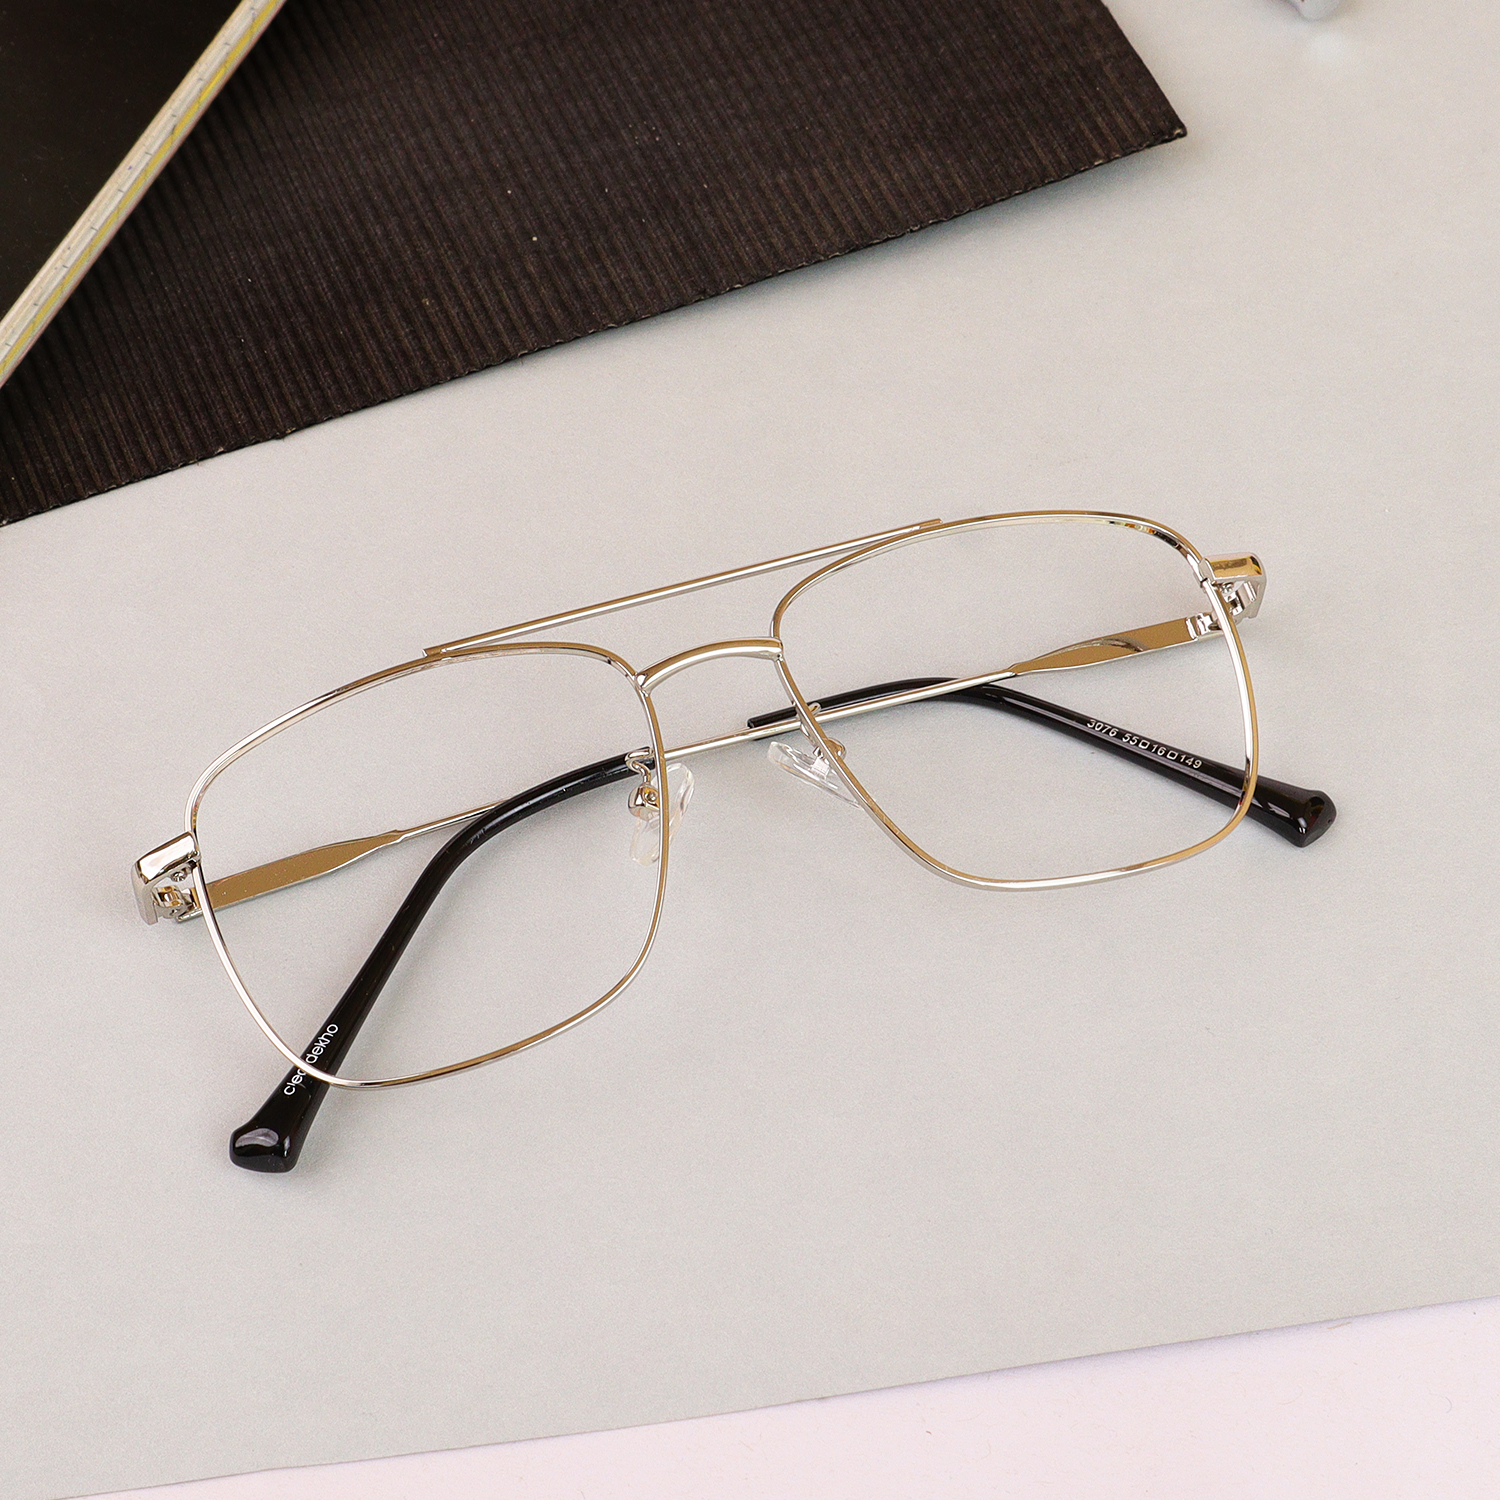 Mirar Clear Full Frame Wayfarer Eyeglasses E50B13406 @ ₹2999